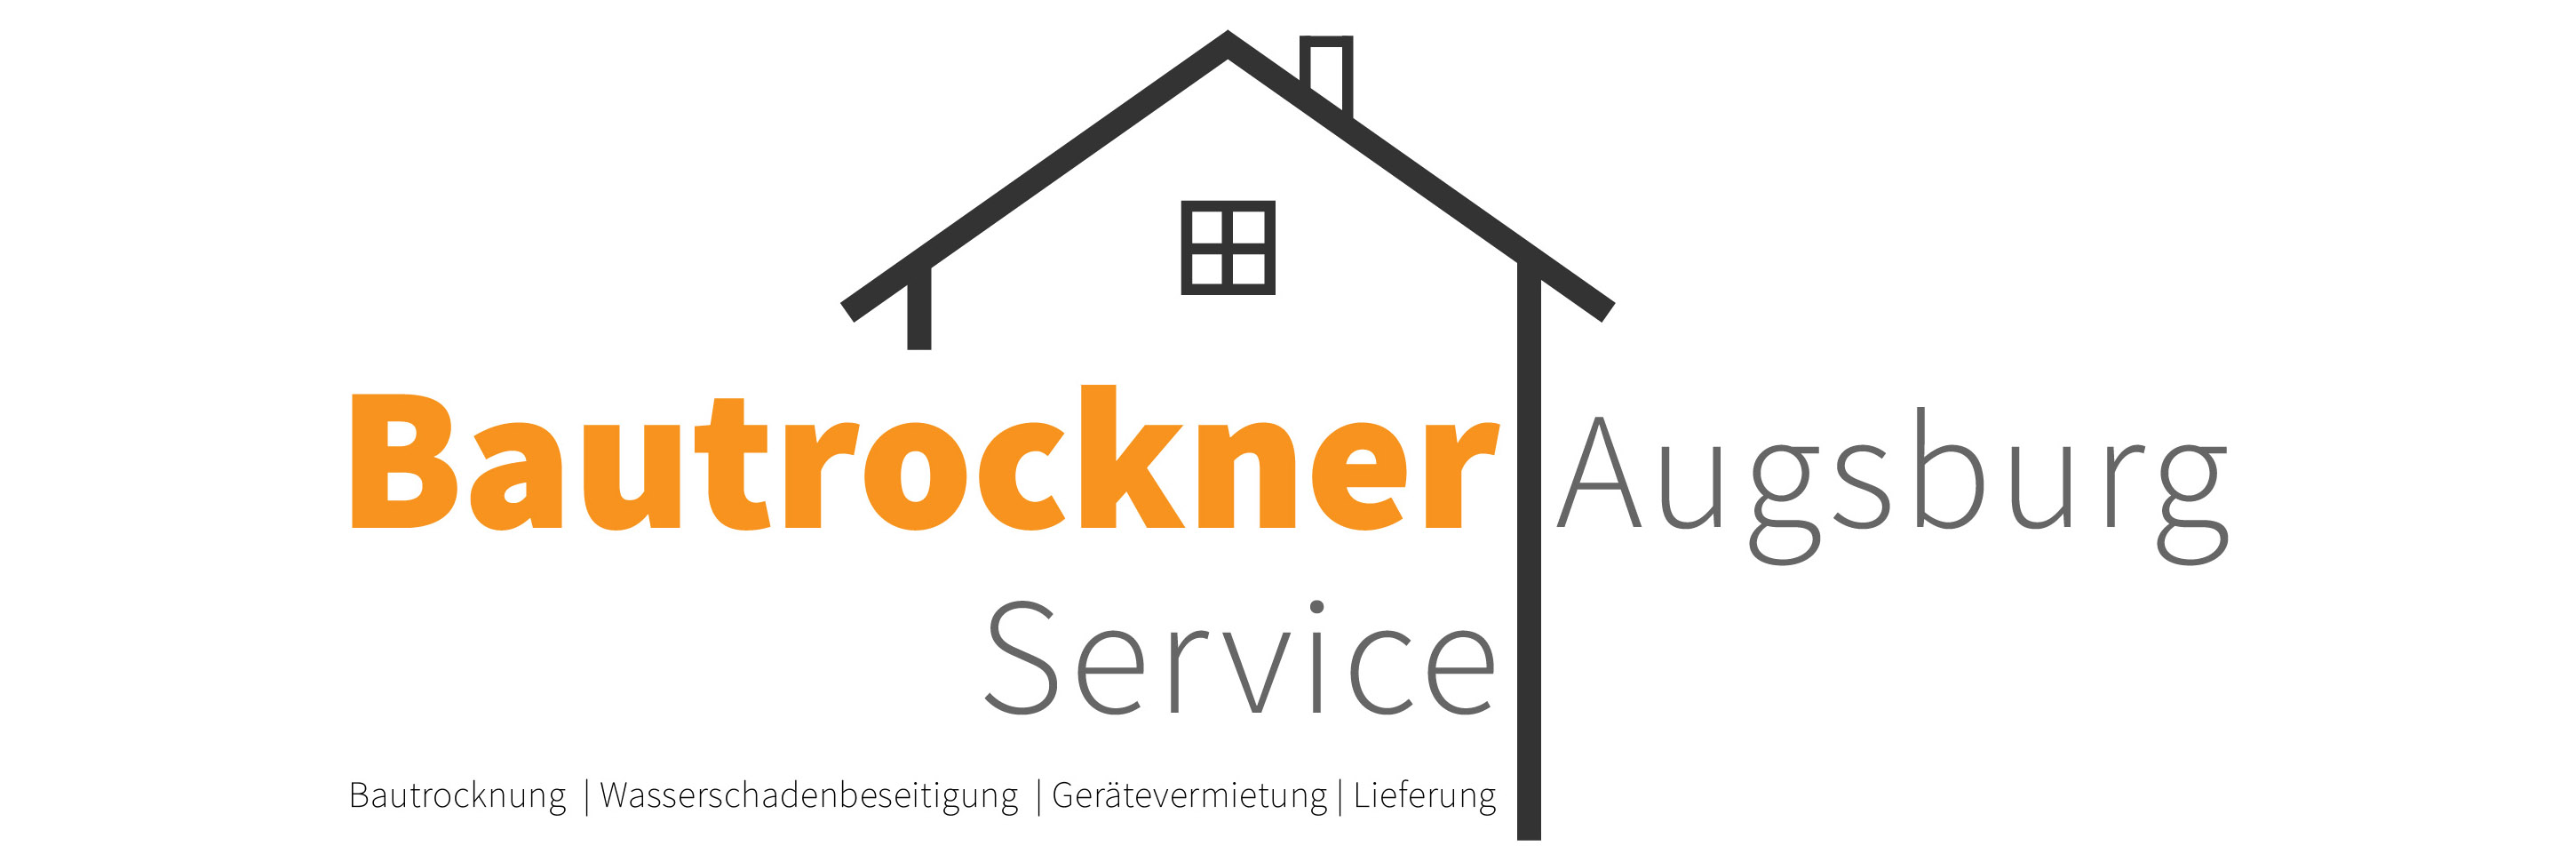 Bautrockner- und Luftentfeuchter-Verleih Augsburg